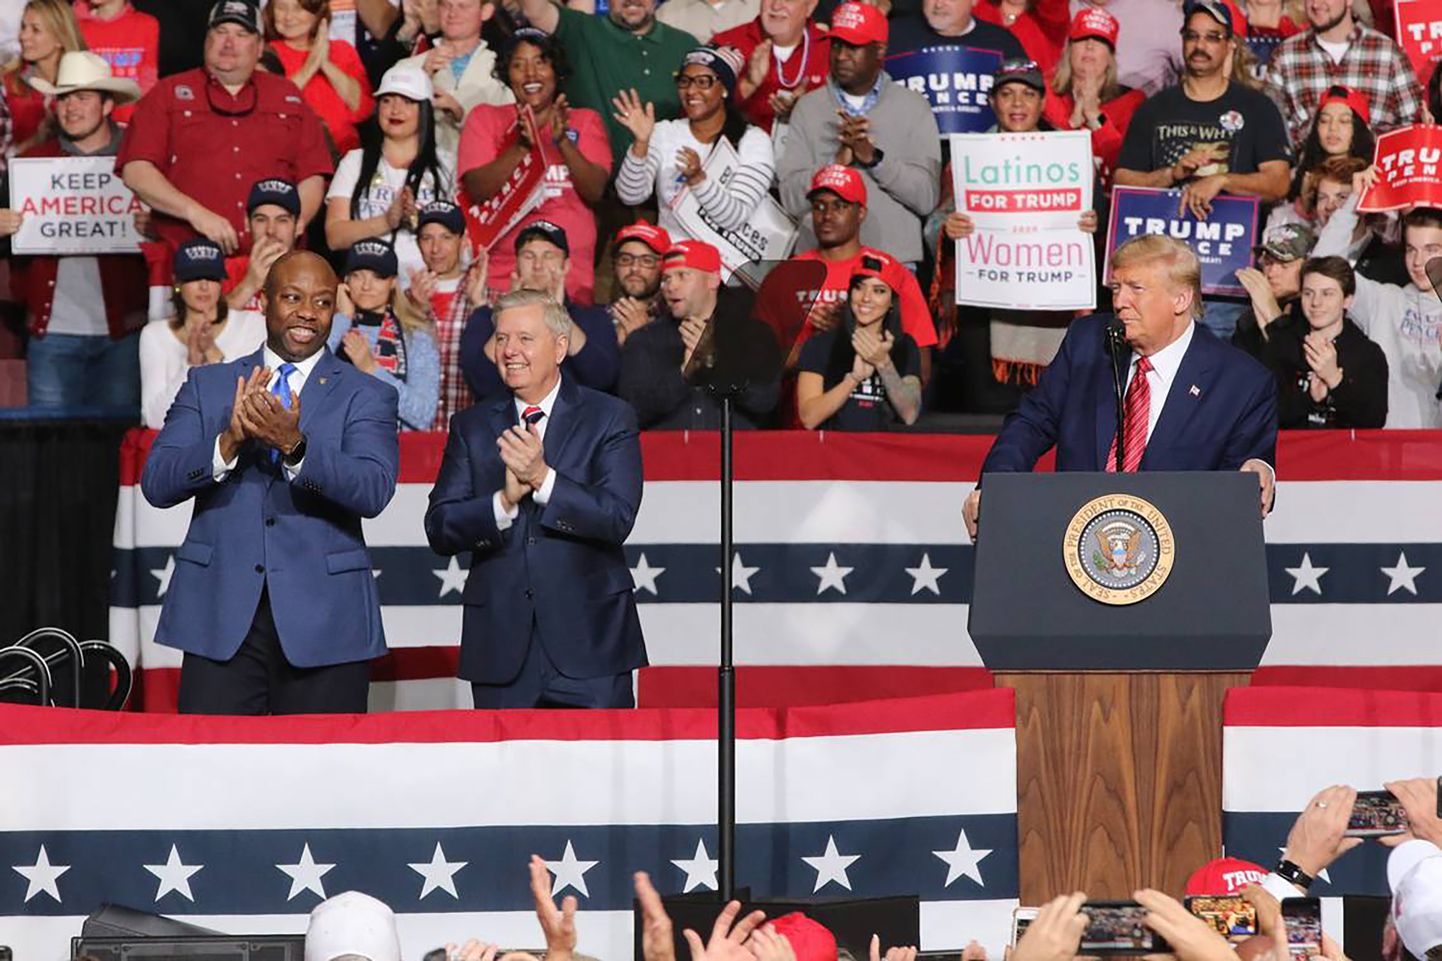 USA Lõuna-Carolina osariigi vabariiklastest senaatorid Tim Scott (vasakul) ja Lindsey Graham osalevad sel 2020. aasta 28. veebruaril tehtud fotol oma osariigis valimisüritusel koos president Donald Trumpiga, päev hiljem peeti osariigis demokraatide presidendikandidaadi eelvalimised.